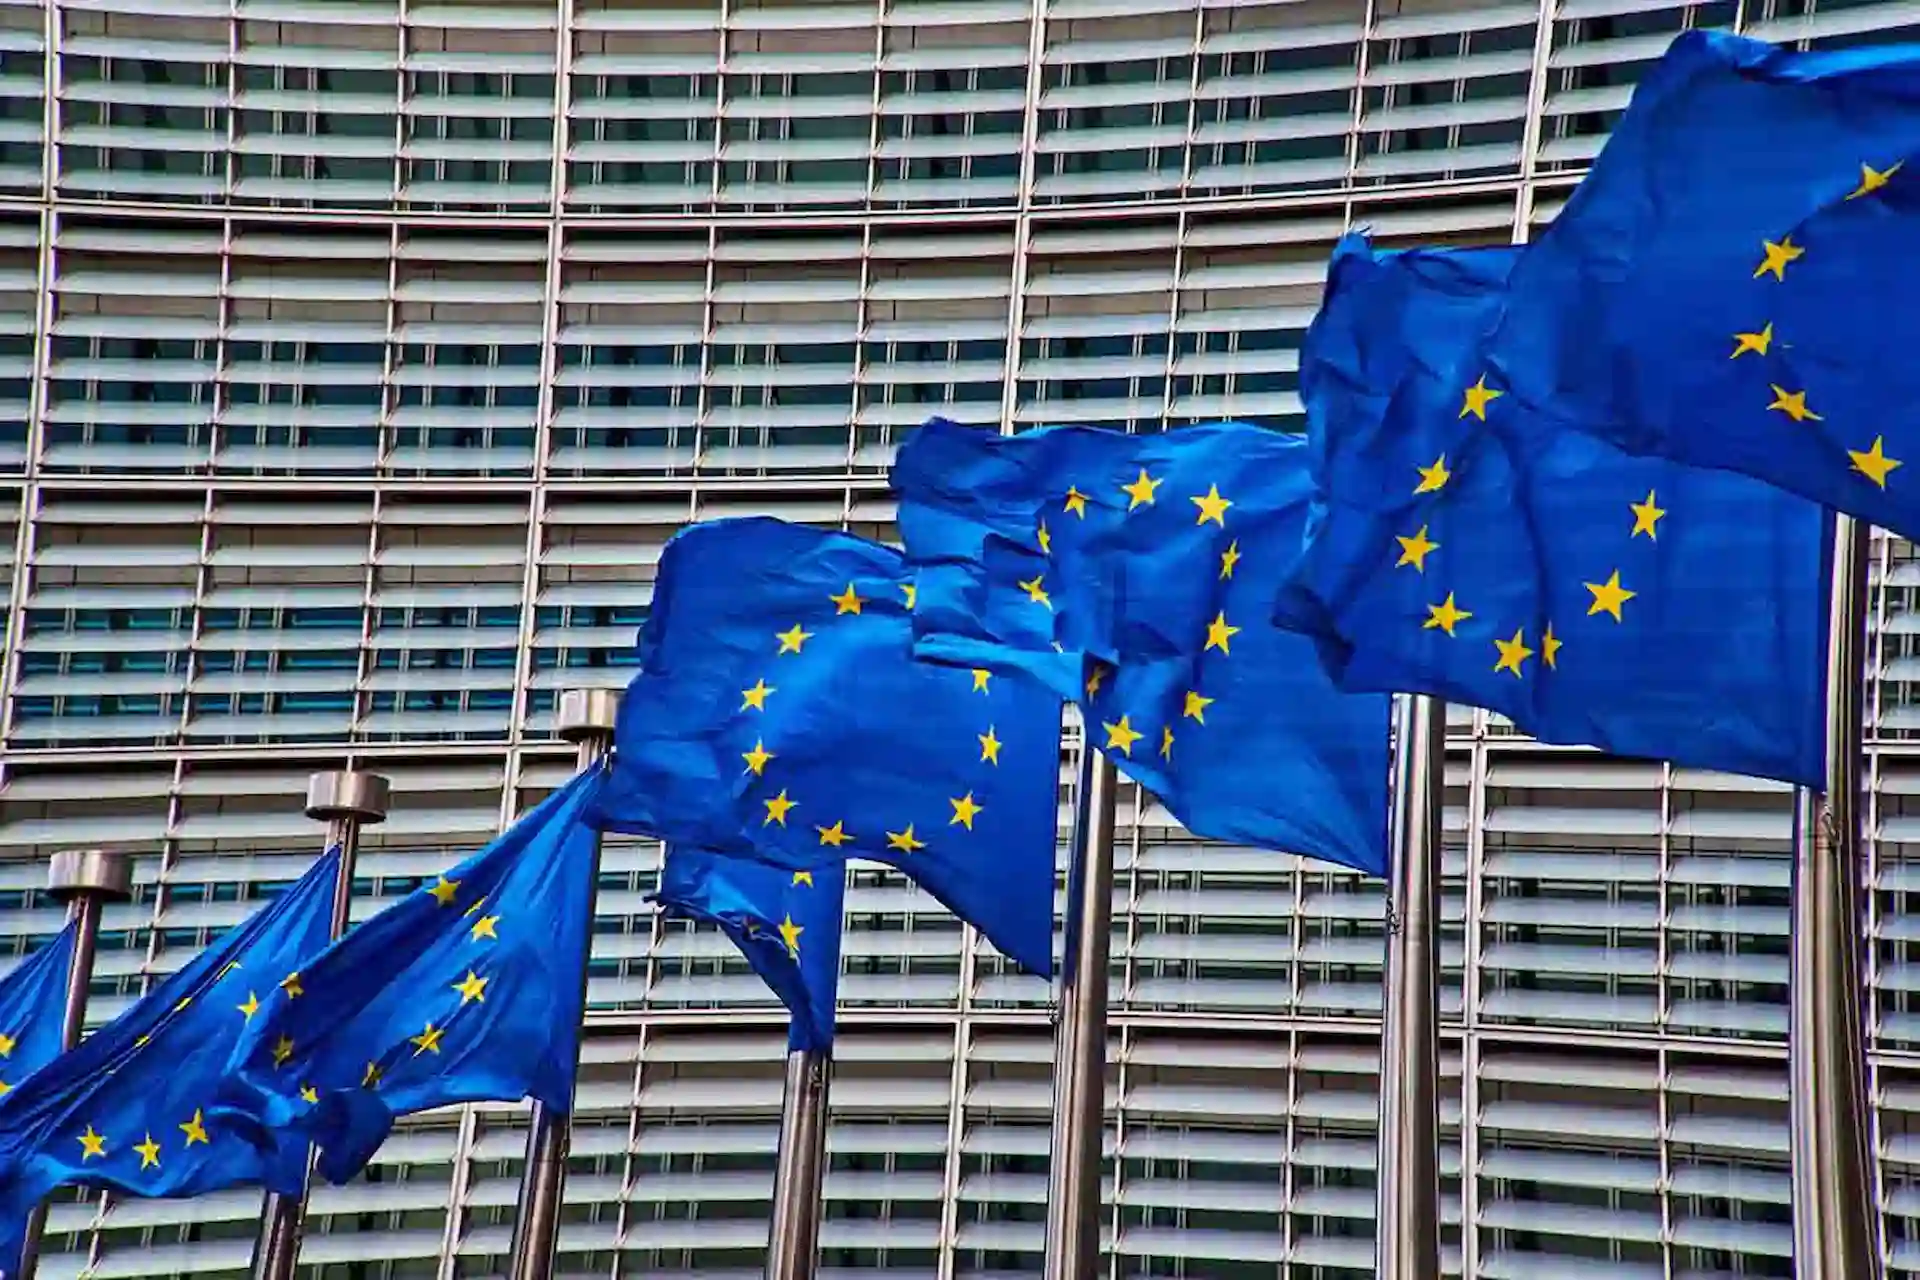 Banderas de la Unión Europea (UE) en frente del edificio Berlaymont, sede de la Comisión Europea en Bruselas. Glifosato / Foto: PB